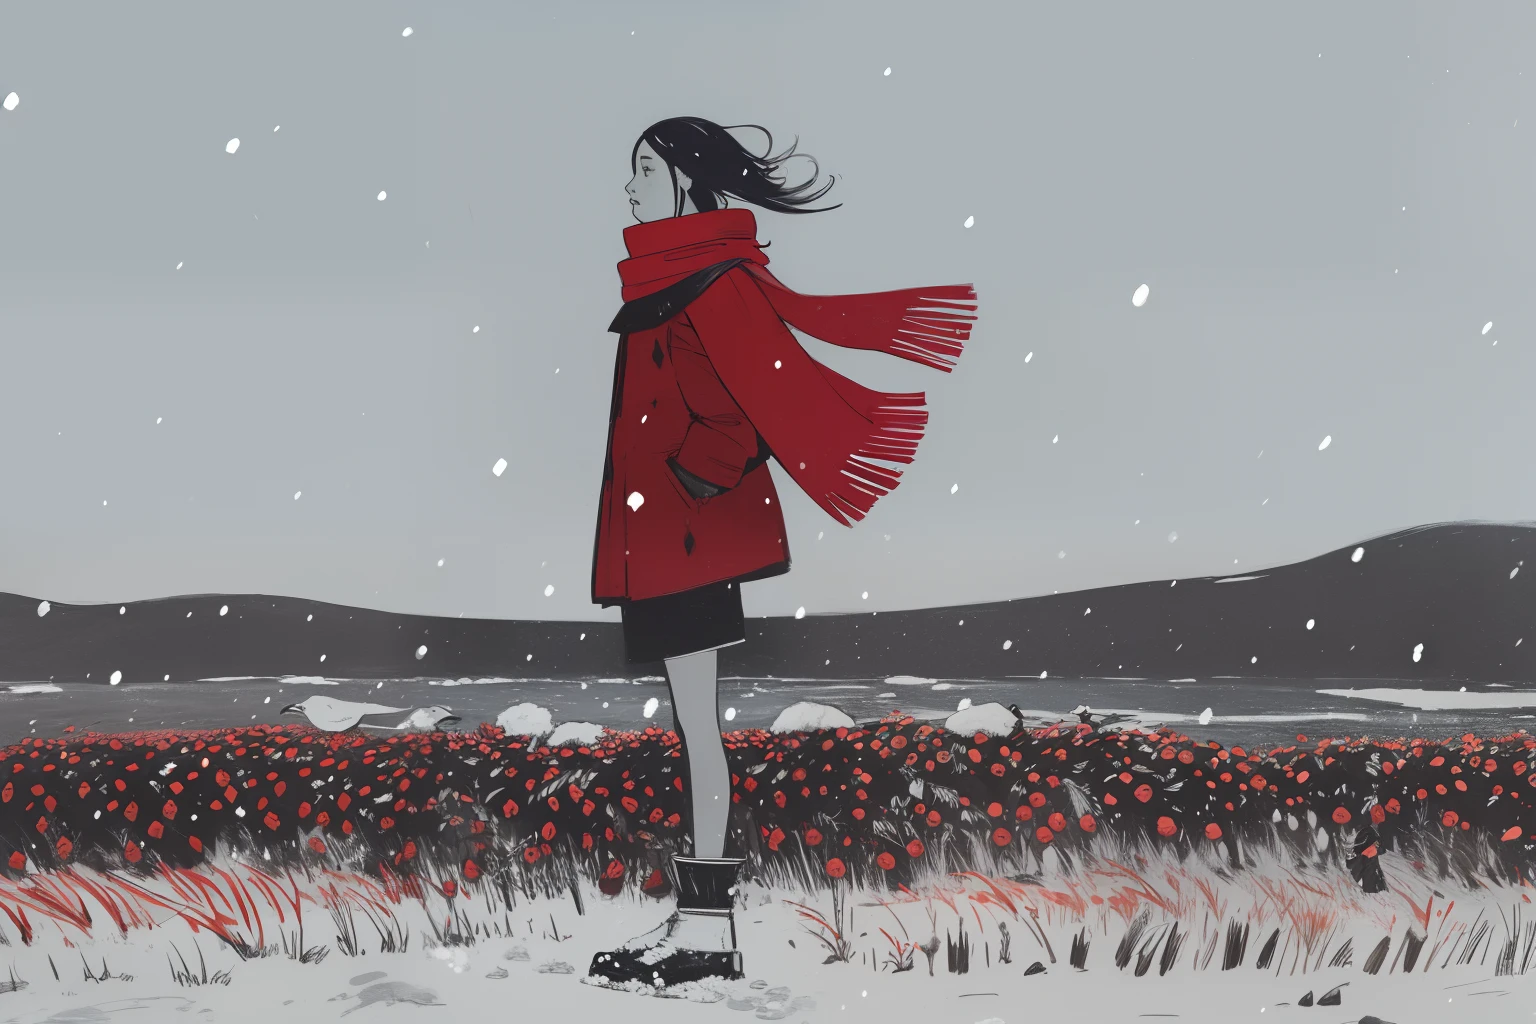 (부족의, 민족, 원주민 이누이트), 여자 1명, red scarf on 바람, 서 있는, 겨울, 눈보라, 바람, 폭설, 동토대, 습지, 레드 베리, 회색, 하얀색, 어두운, 밤, 하늘을 나는 거대한 새들,  스케치